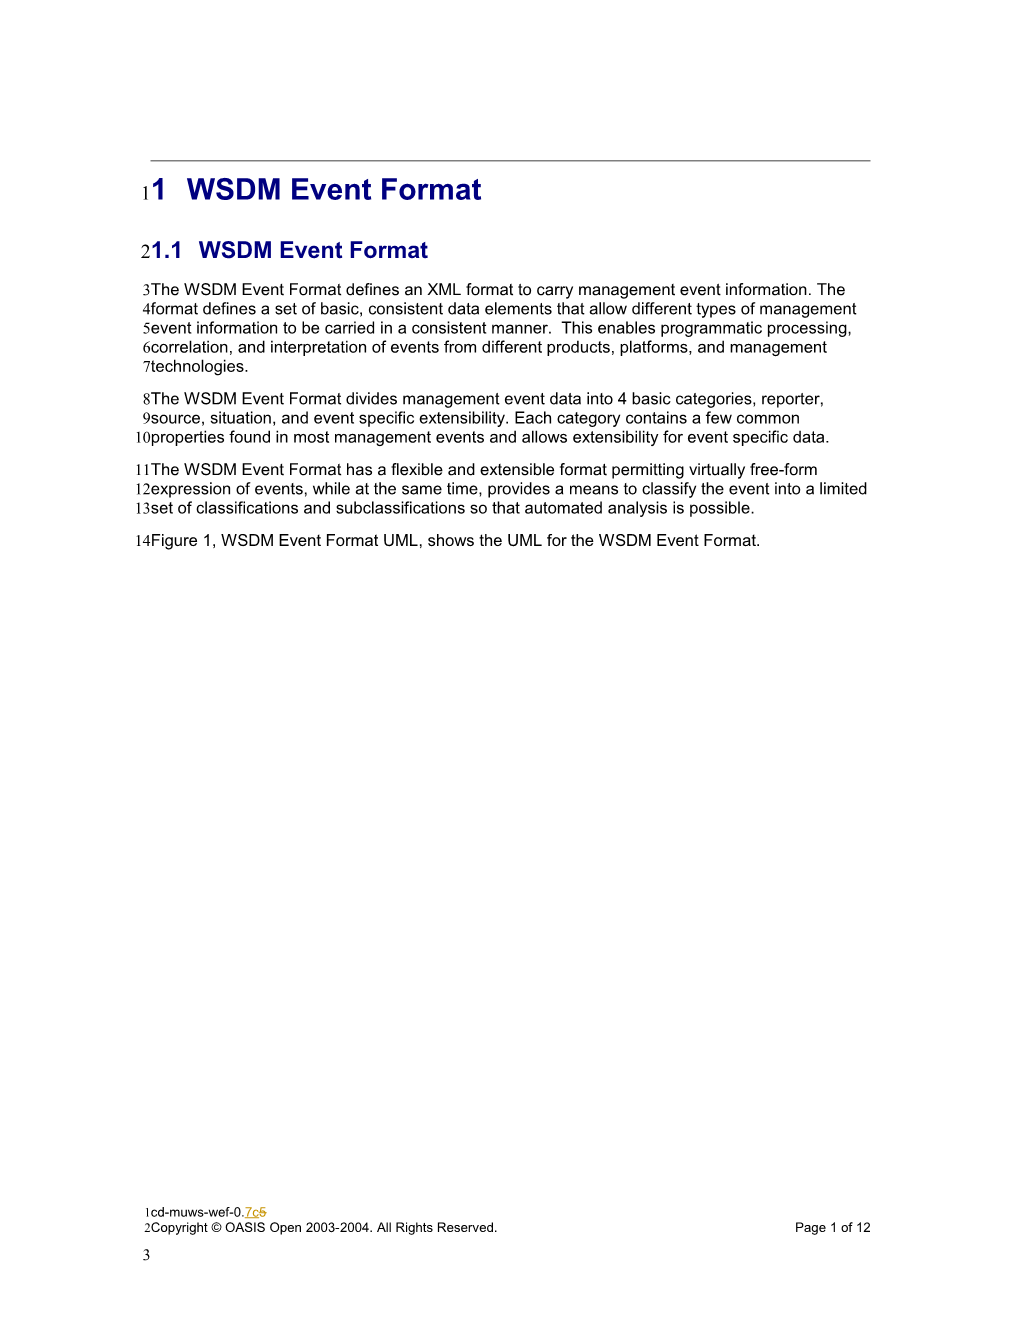 1WSDM Event Format